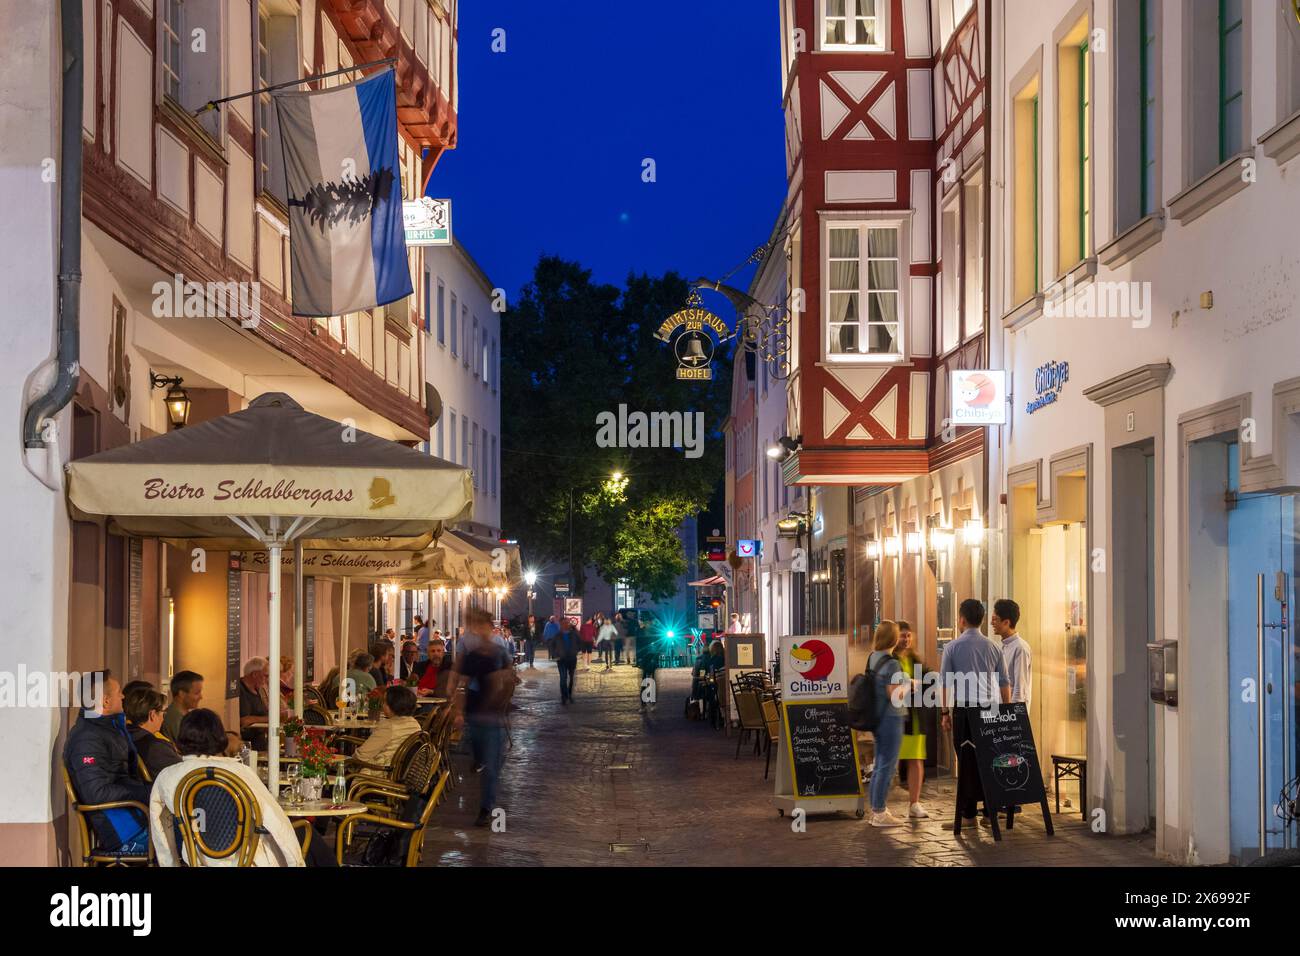 Trèves, rue Glockenstraße dans la vieille ville, restaurant en plein air, région de Moselle, Rhénanie-Palatinat, Allemagne Banque D'Images